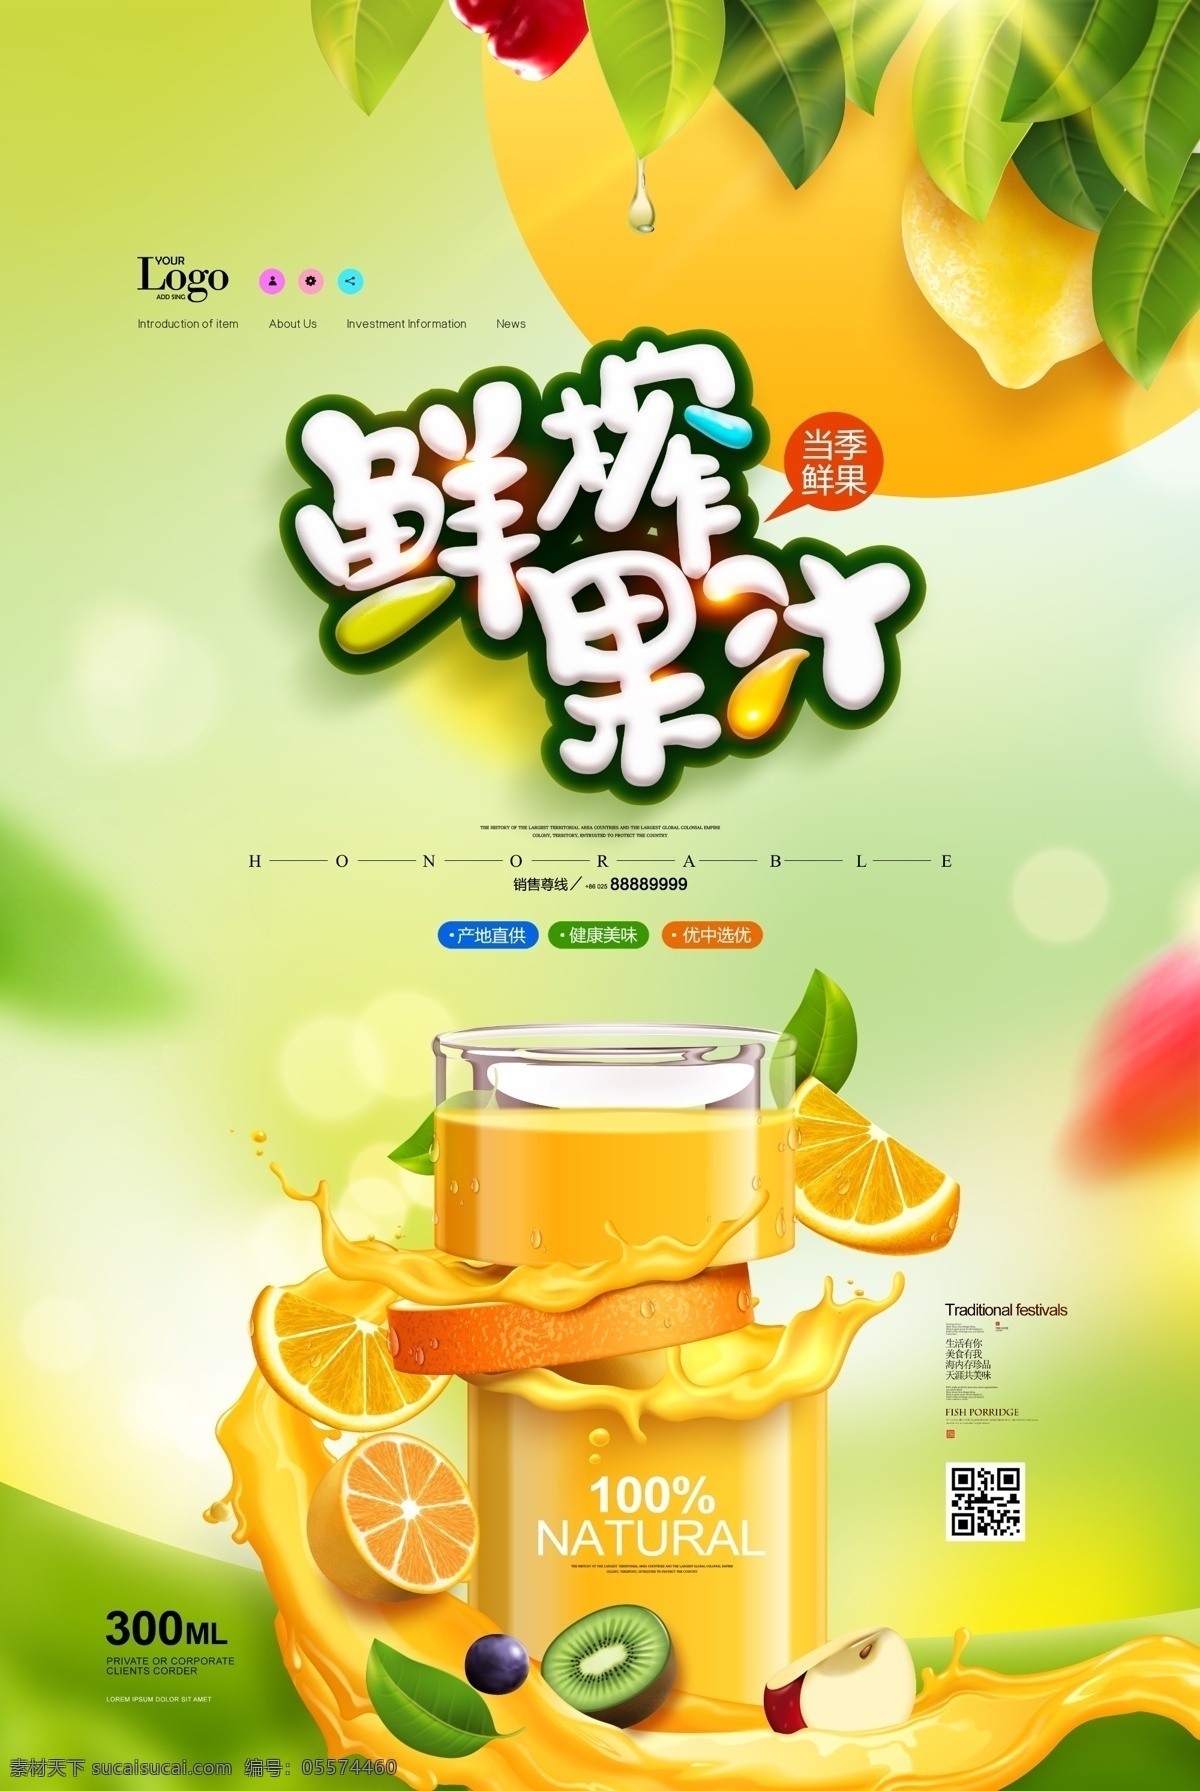 新鲜果汁 果汁 冷饮 芒果汁 杨桃汁 水果 鲜榨果汁 果汁海报